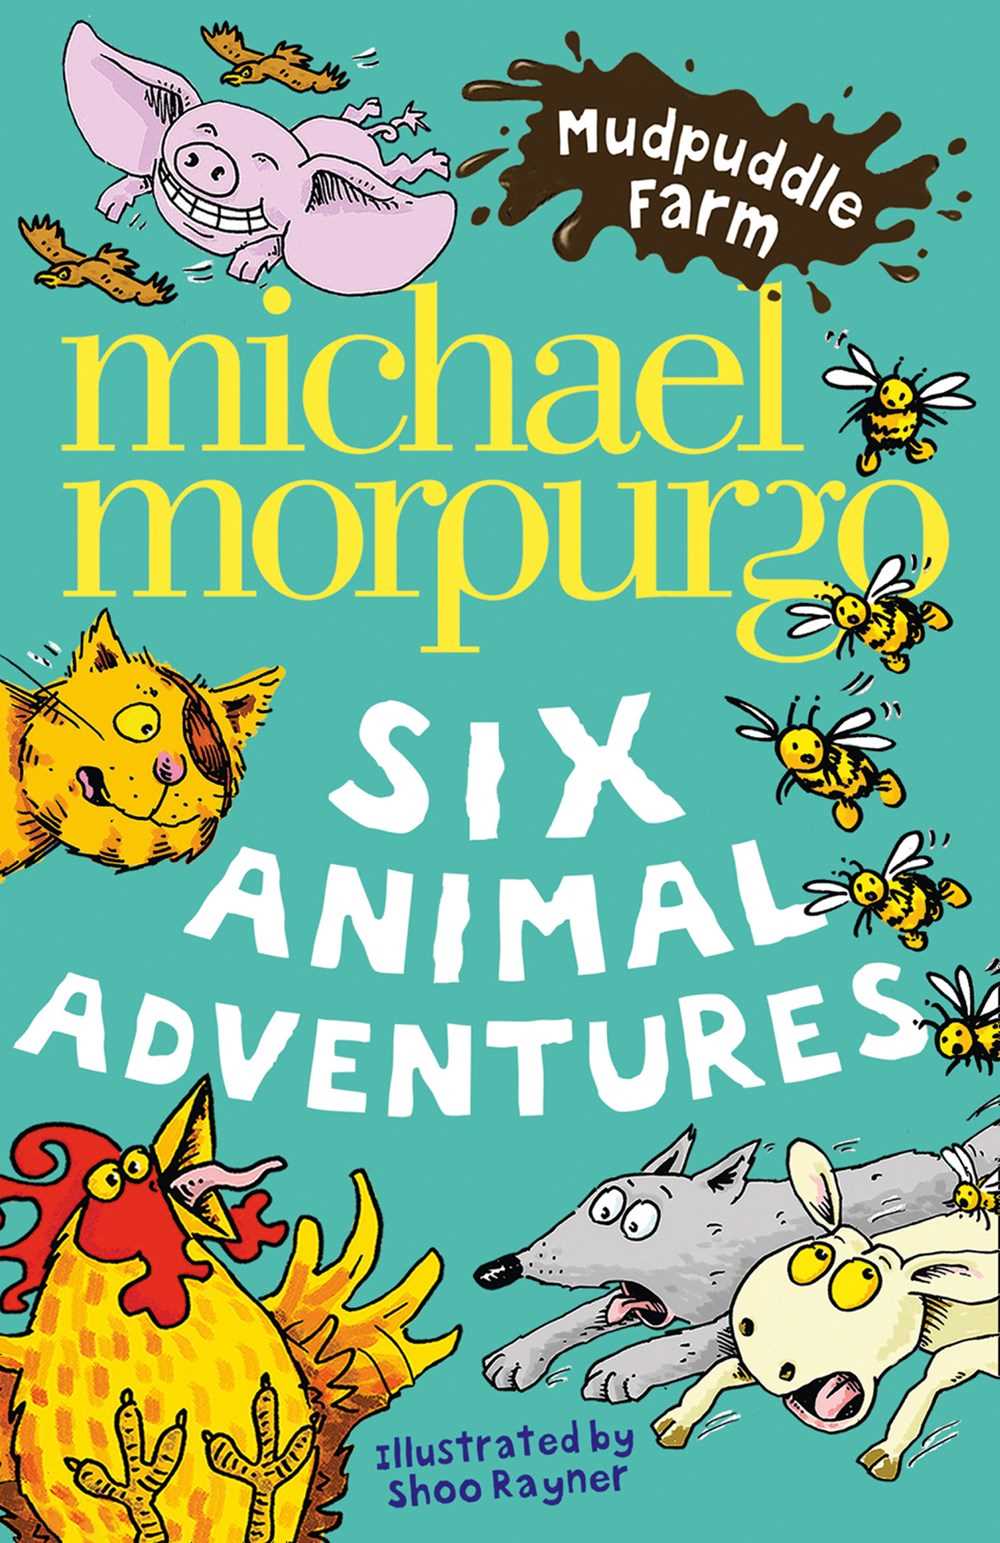 Приключения животных. Morpurgo Michael mudpuddle Farm. Заказать книгу 10+ про приключения животных.